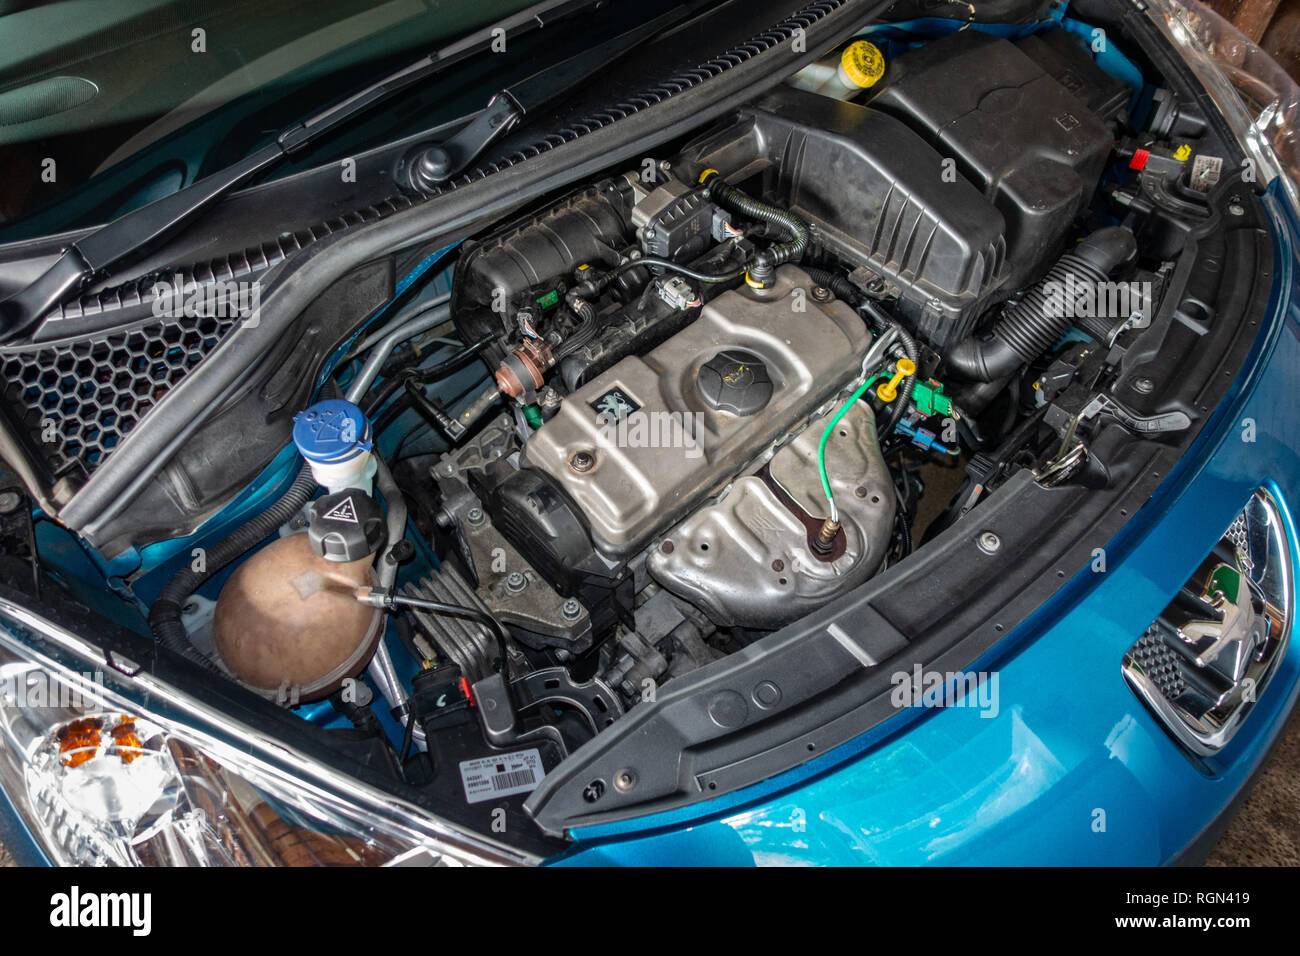 Peugeot 207 moteur Banque de photographies et d'images à haute résolution -  Alamy